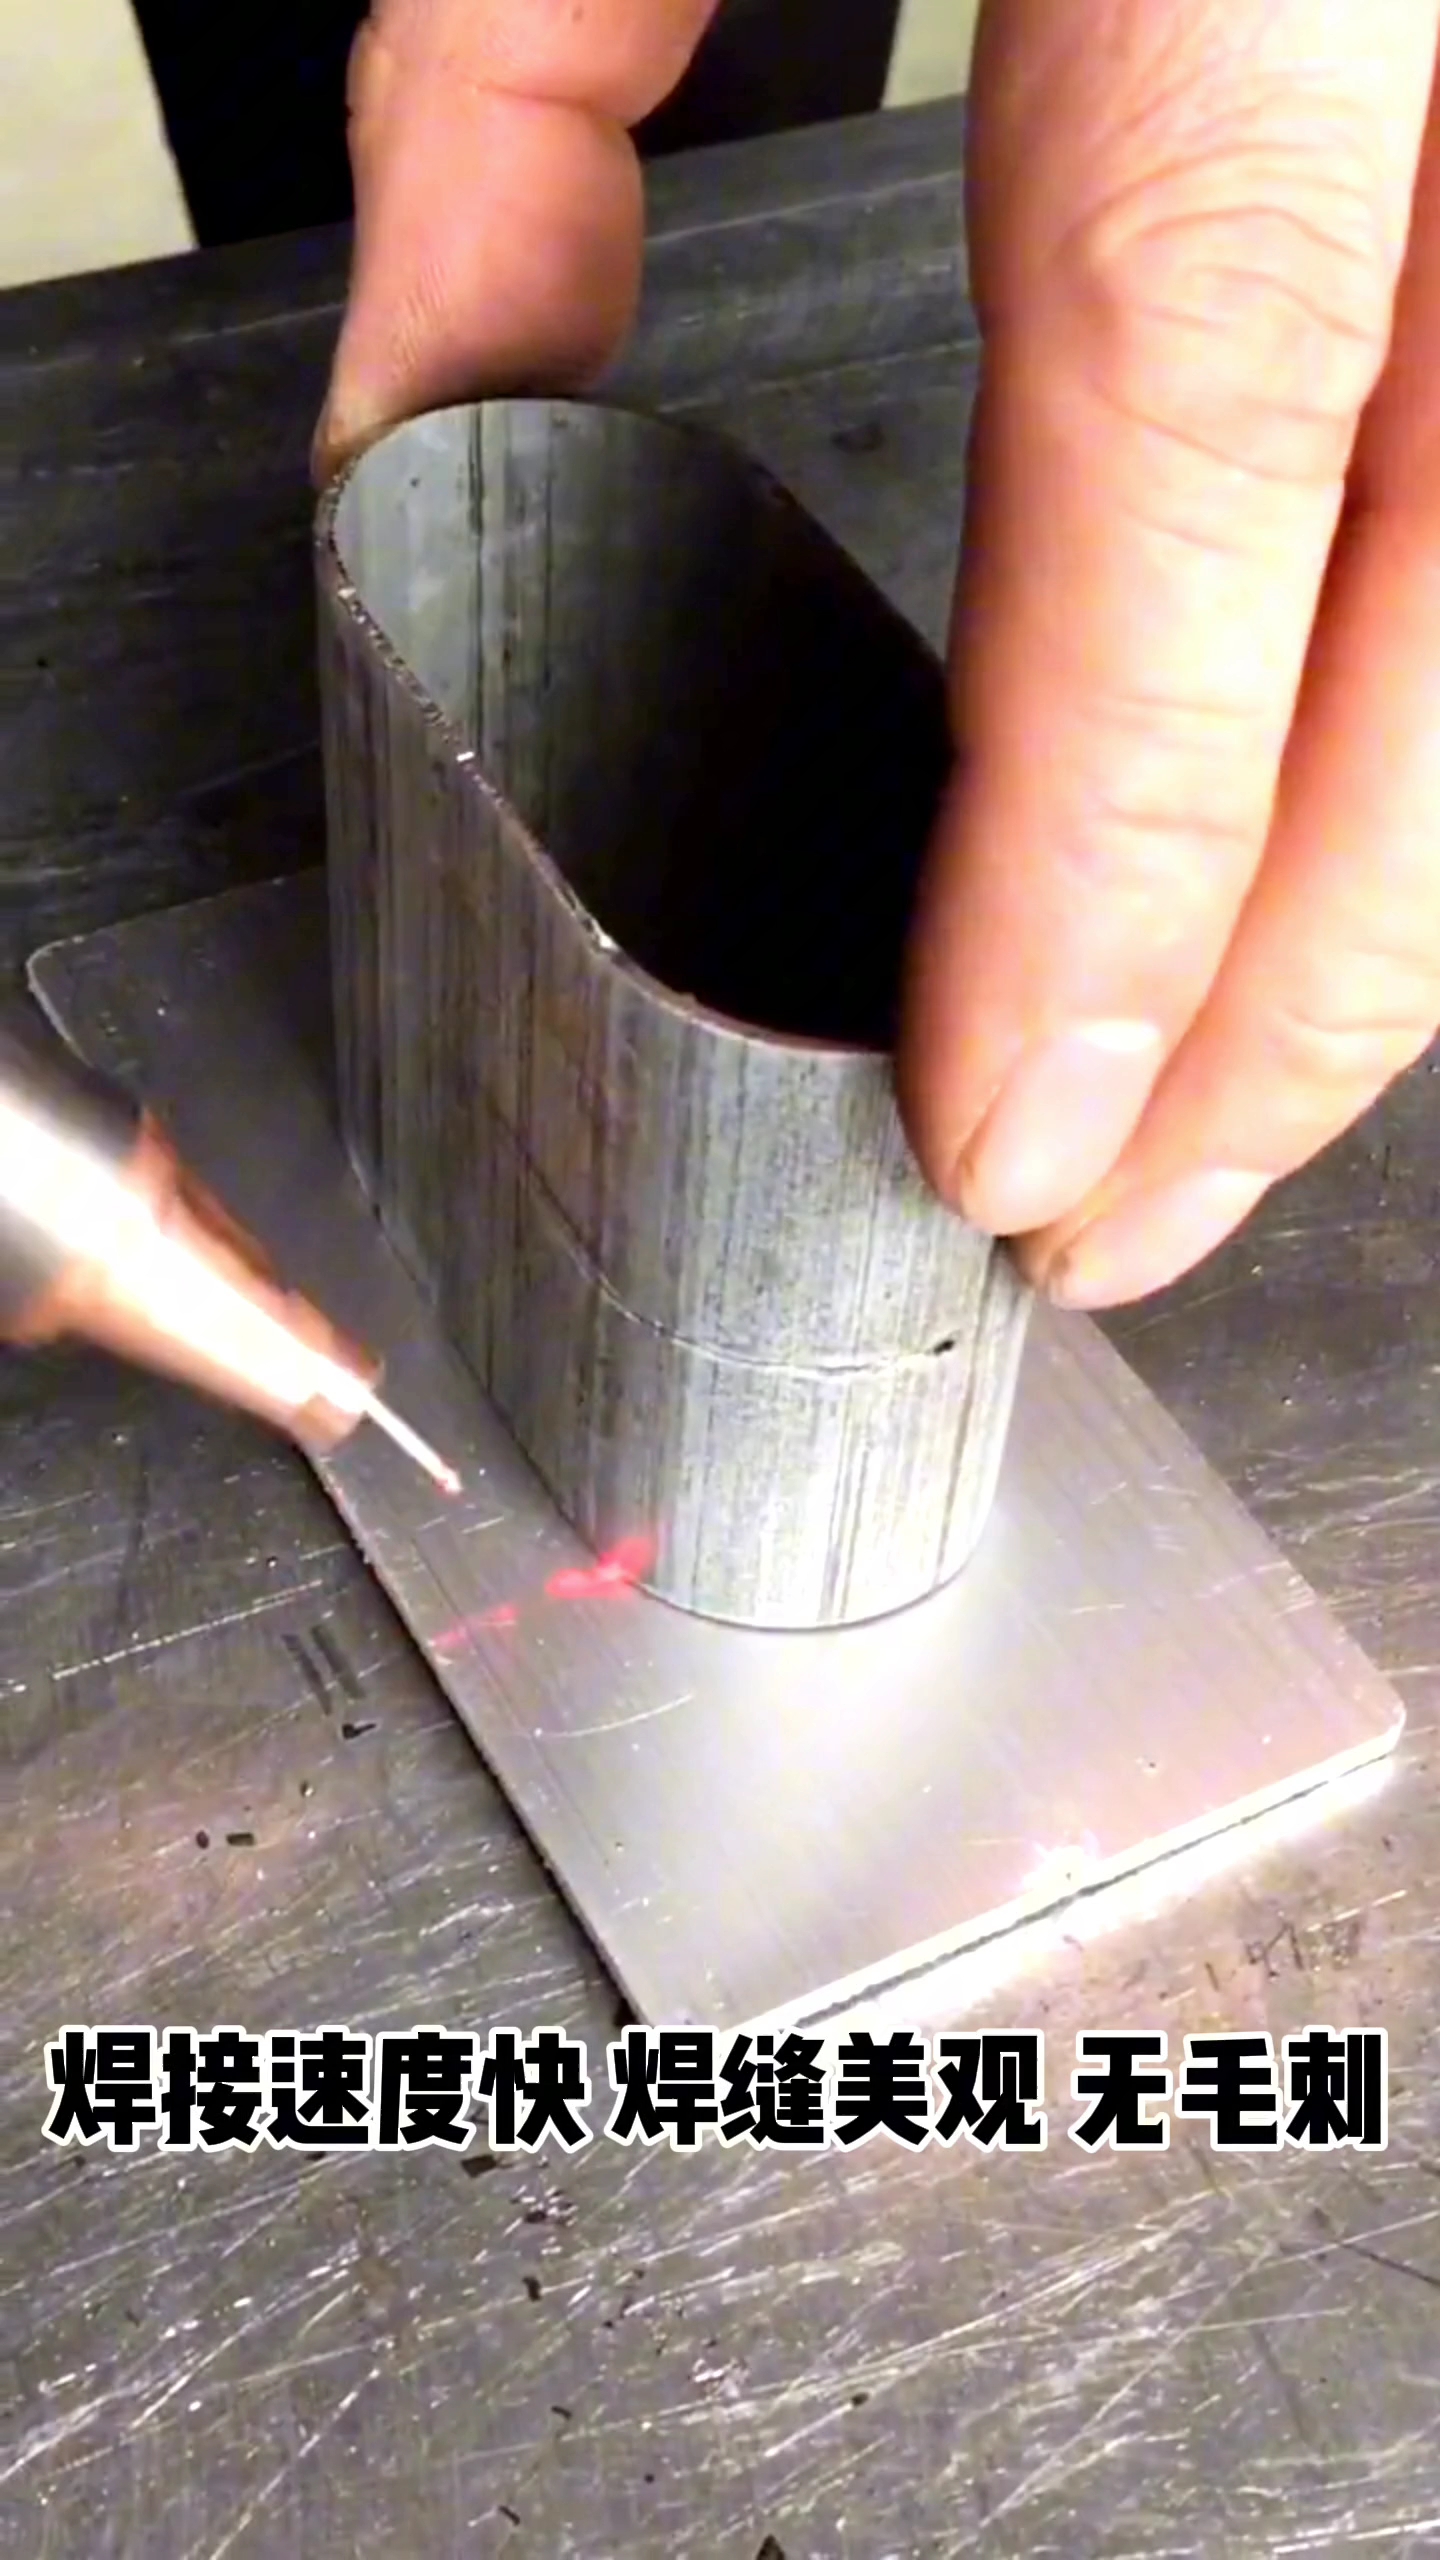 鐳拓手持激光焊接機焊接速度快焊縫美觀#手持激光焊接機 #激光焊接機#